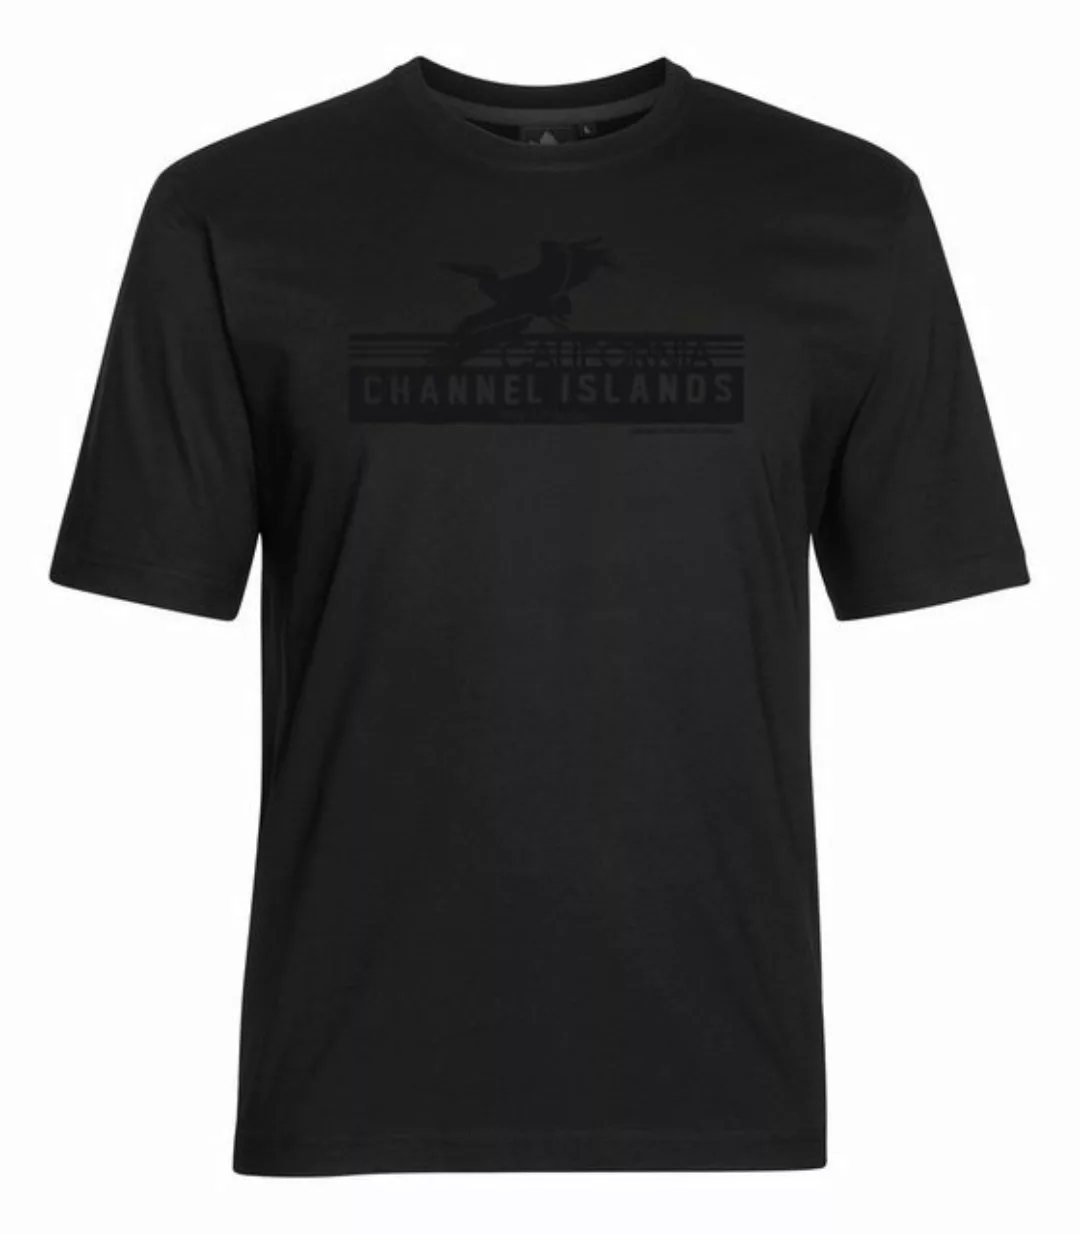 AHORN SPORTSWEAR T-Shirt CHANNEL ISLANDS mit großem Frontprint günstig online kaufen